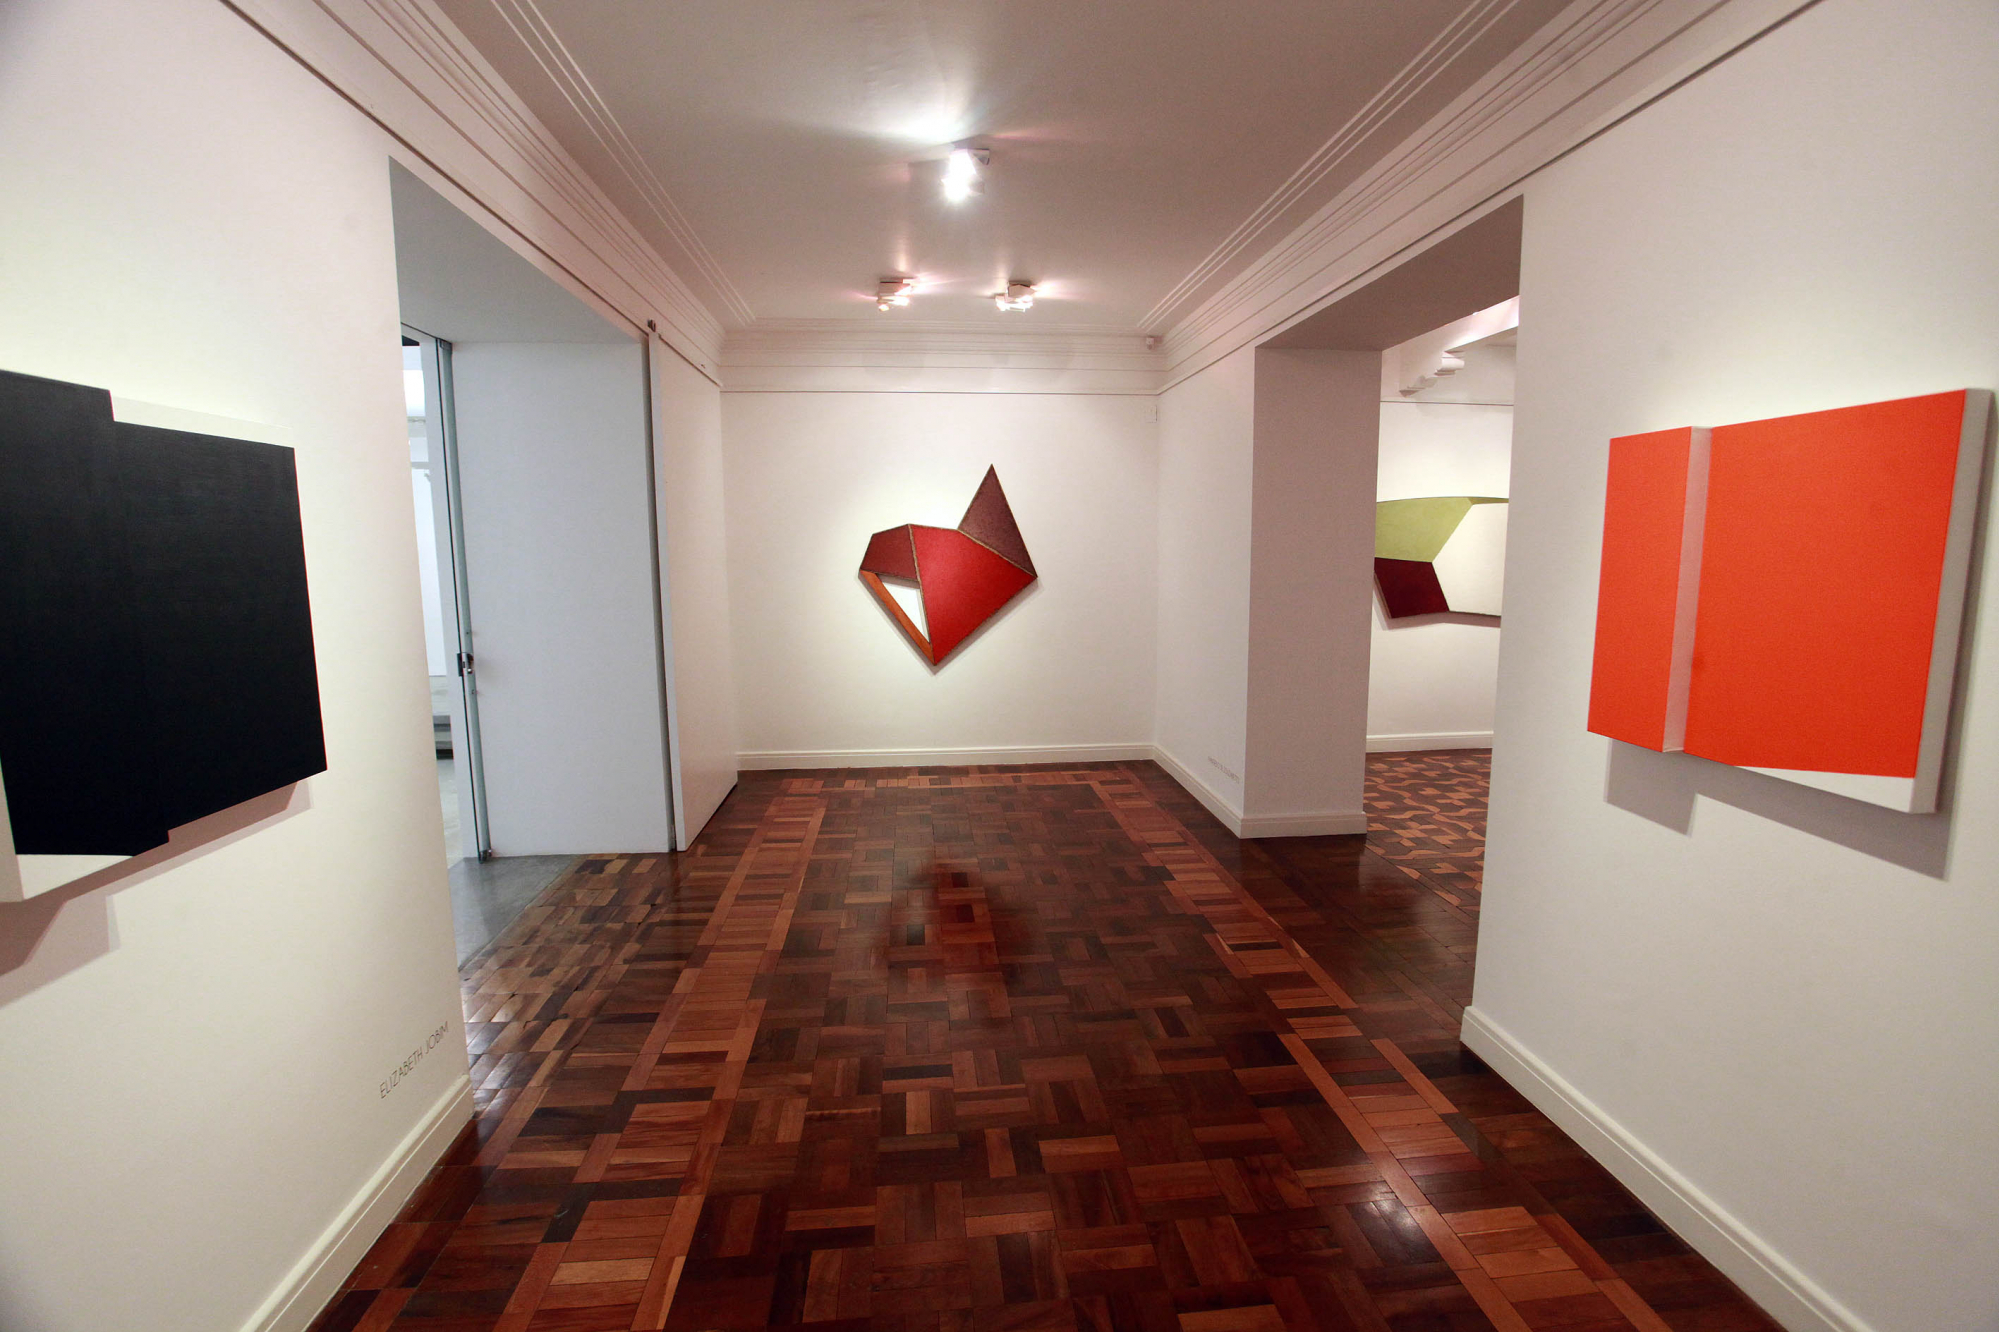 Exposição Coletiva Forma e Presença, Simões de Assis, Curitiba, 2013